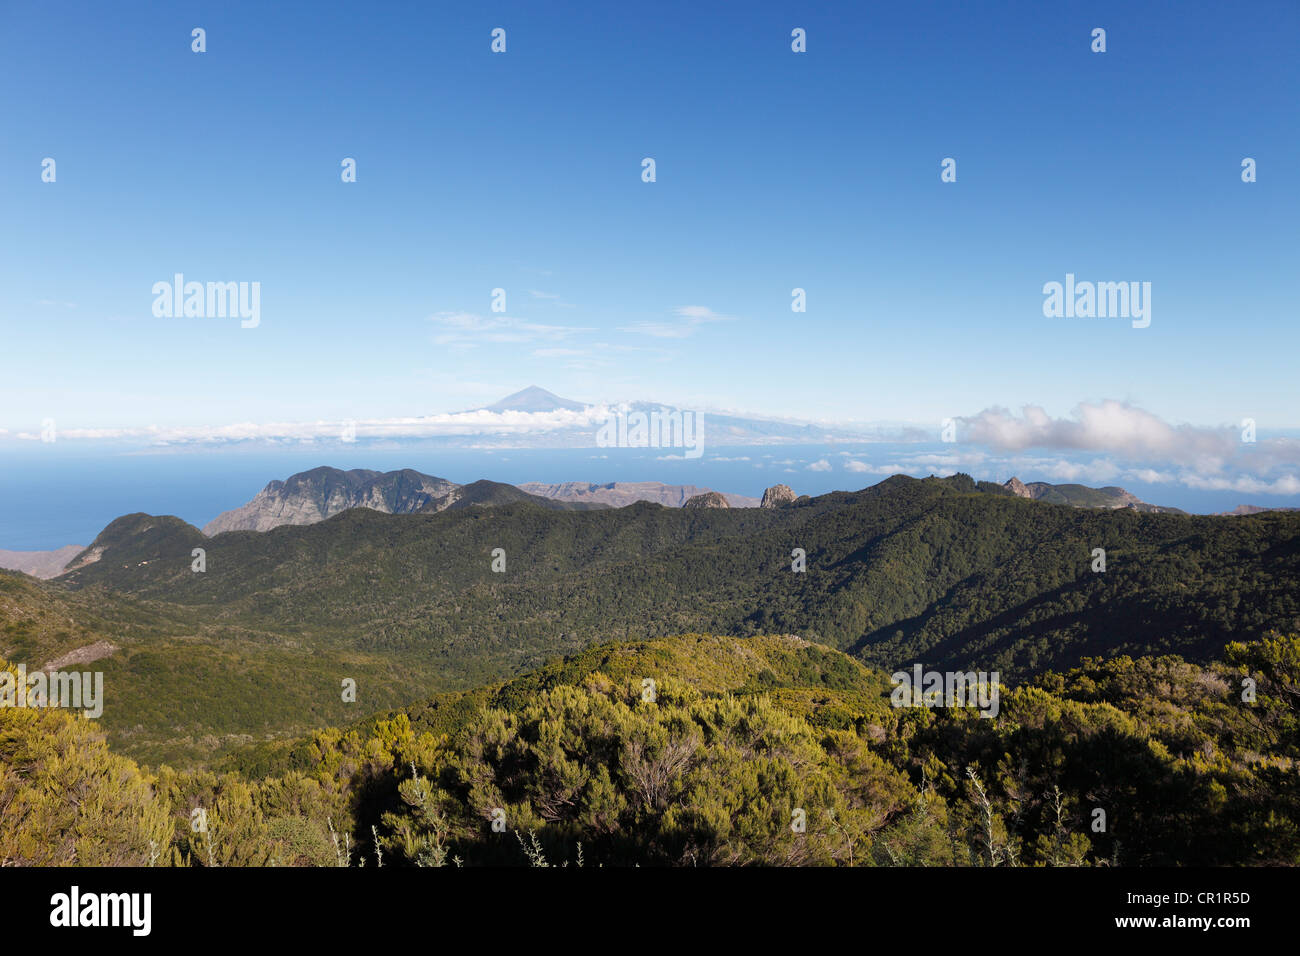 Collines boisées dans le Parc National de Garajonay, vue sur la montagne de Garajonay, plus haut sommet de l'île de La Gomera Banque D'Images